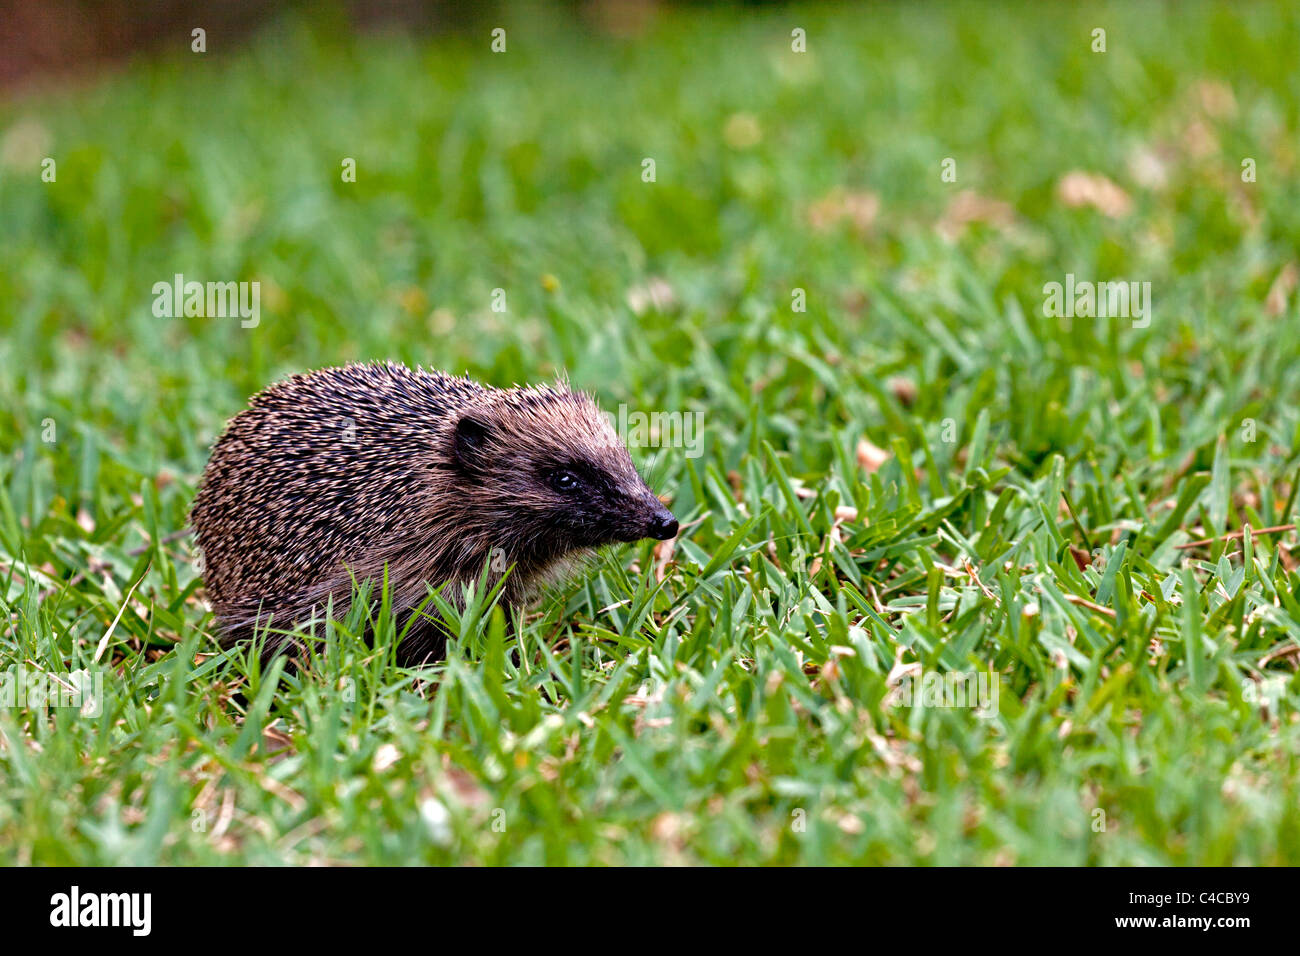 An adult hedgehog foraging on the field (Aquitaine - France). Hérisson adulte cherchant sa nourriture sur une pelouse (France). Stock Photo